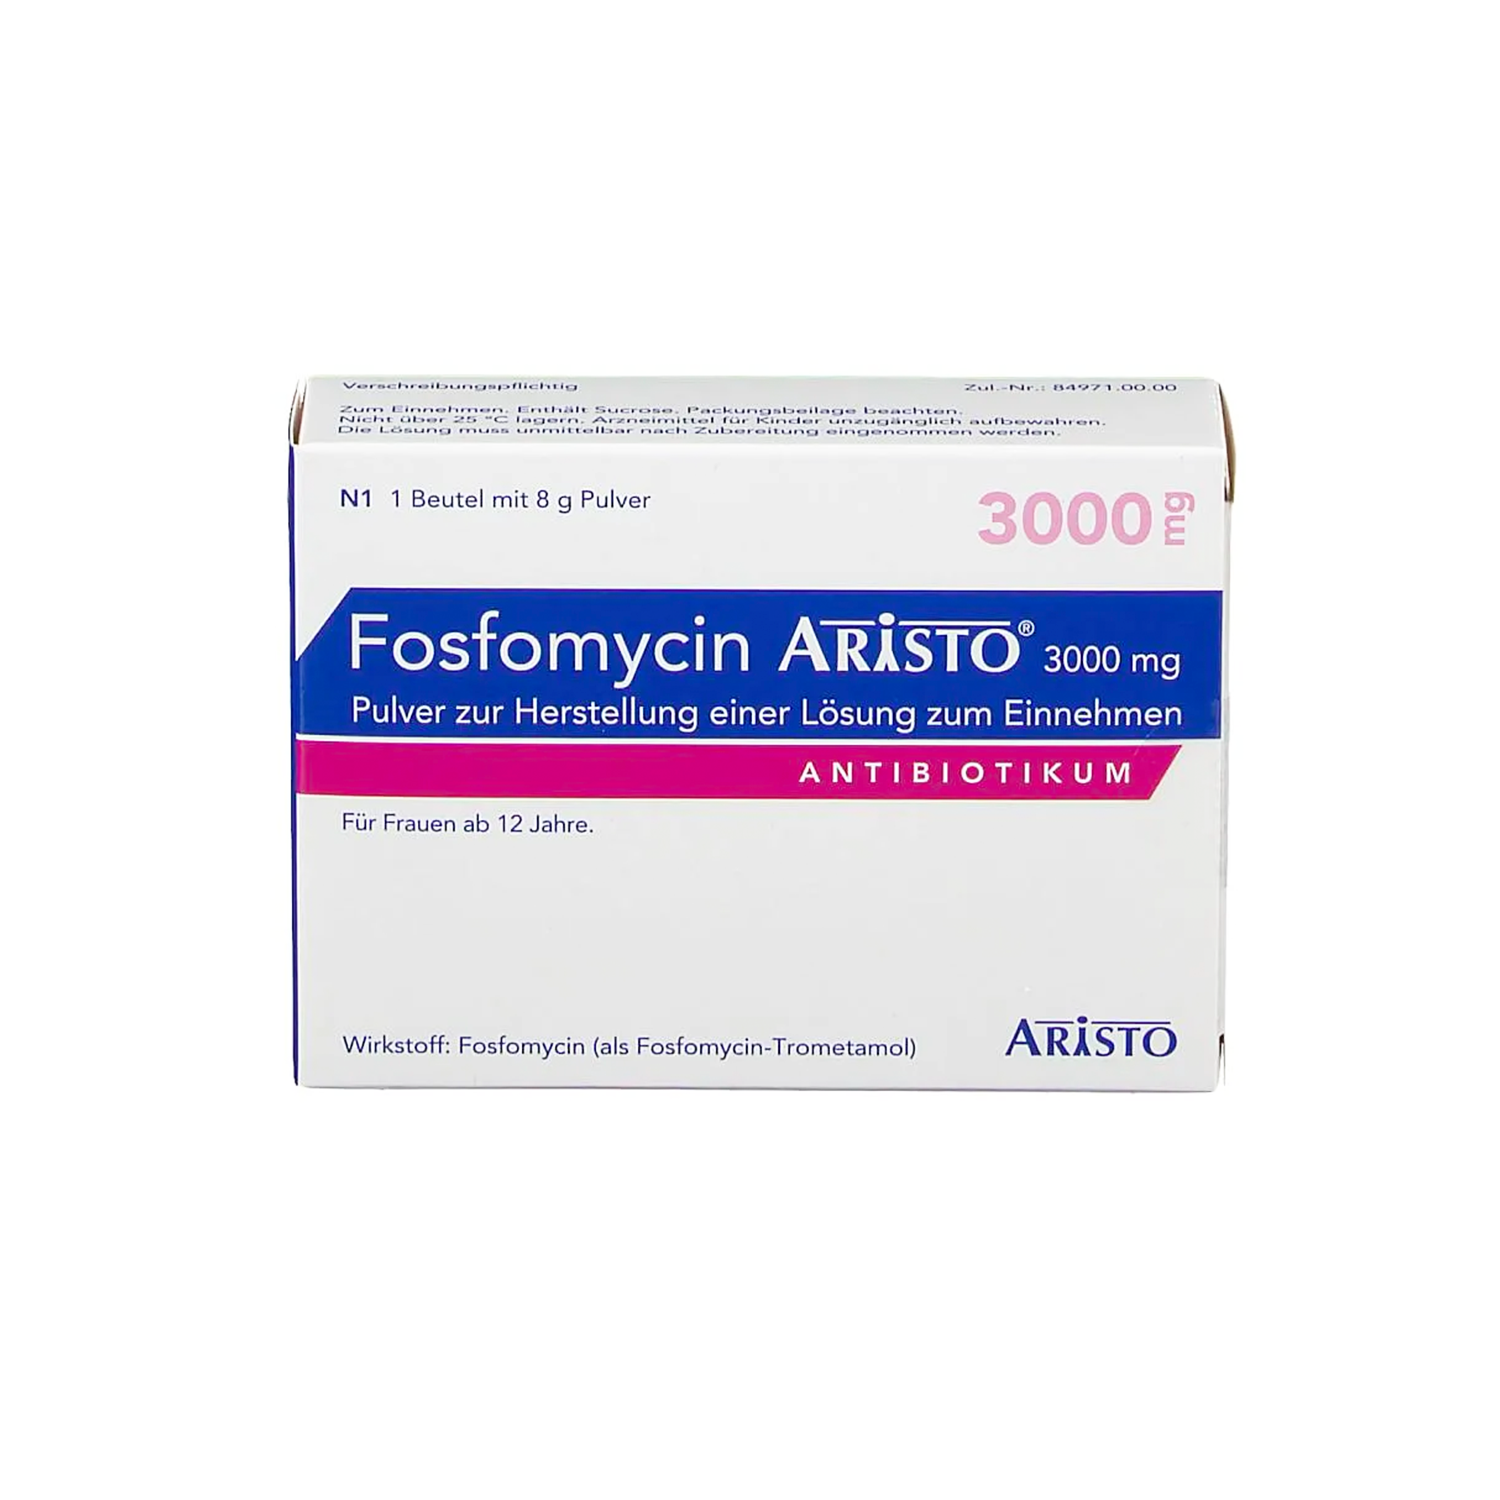 Fosfomycin Aristo® 3000 mg (Antibiotikum)